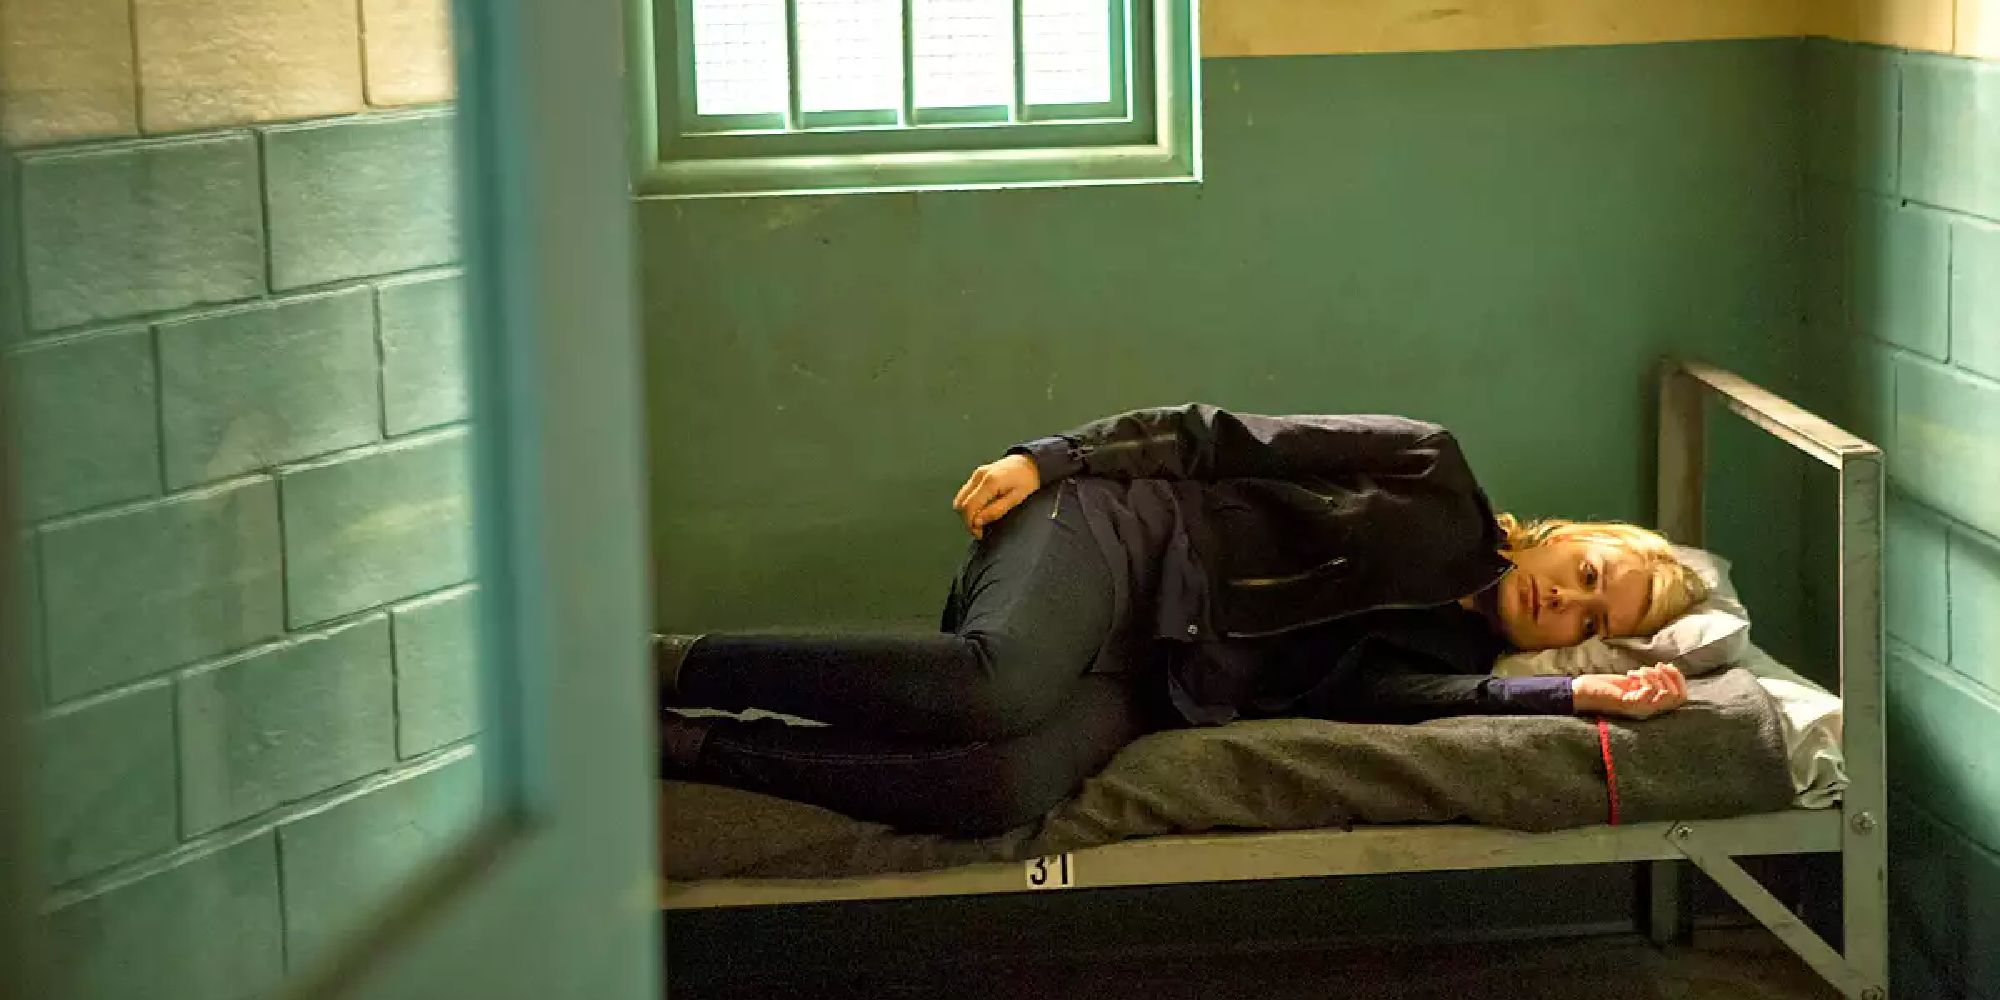 Elizabeth Keen allongée dans son lit dans une cellule de prison